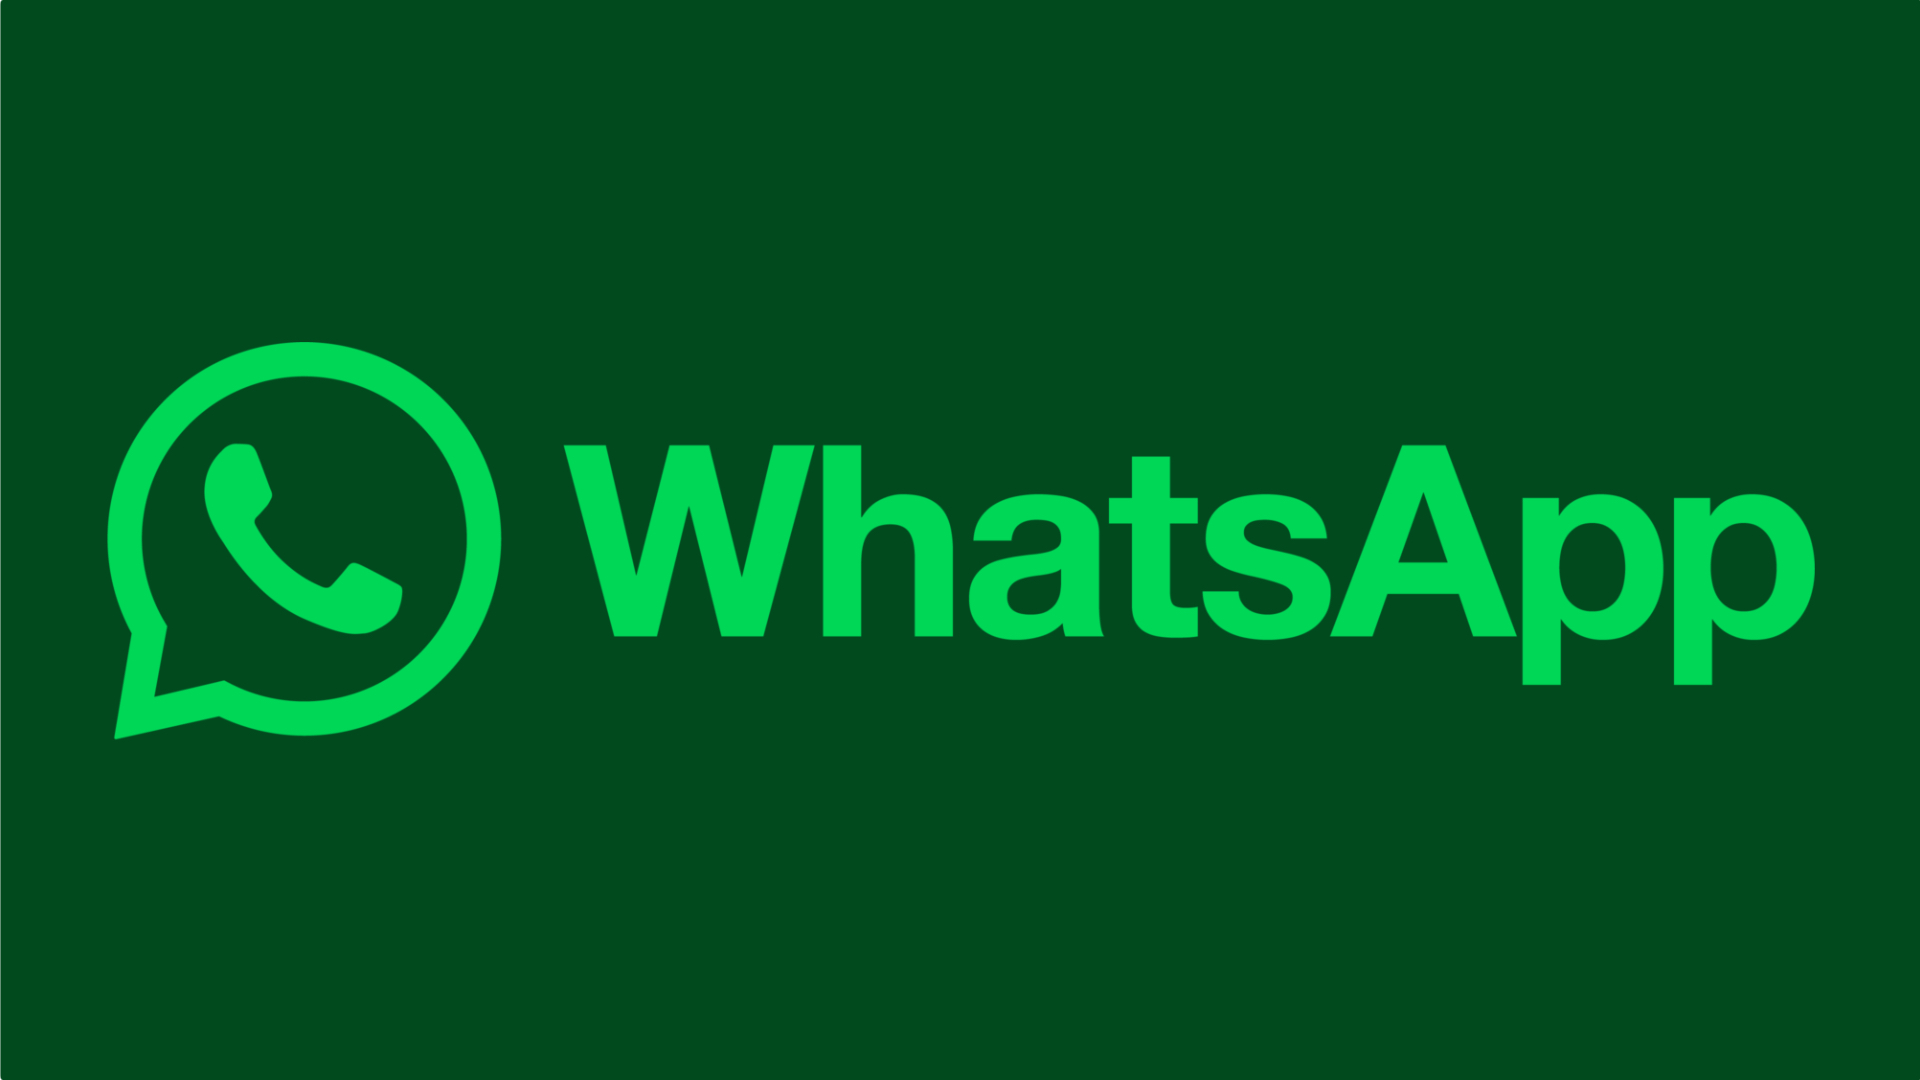 WhatsApp Client Development Software